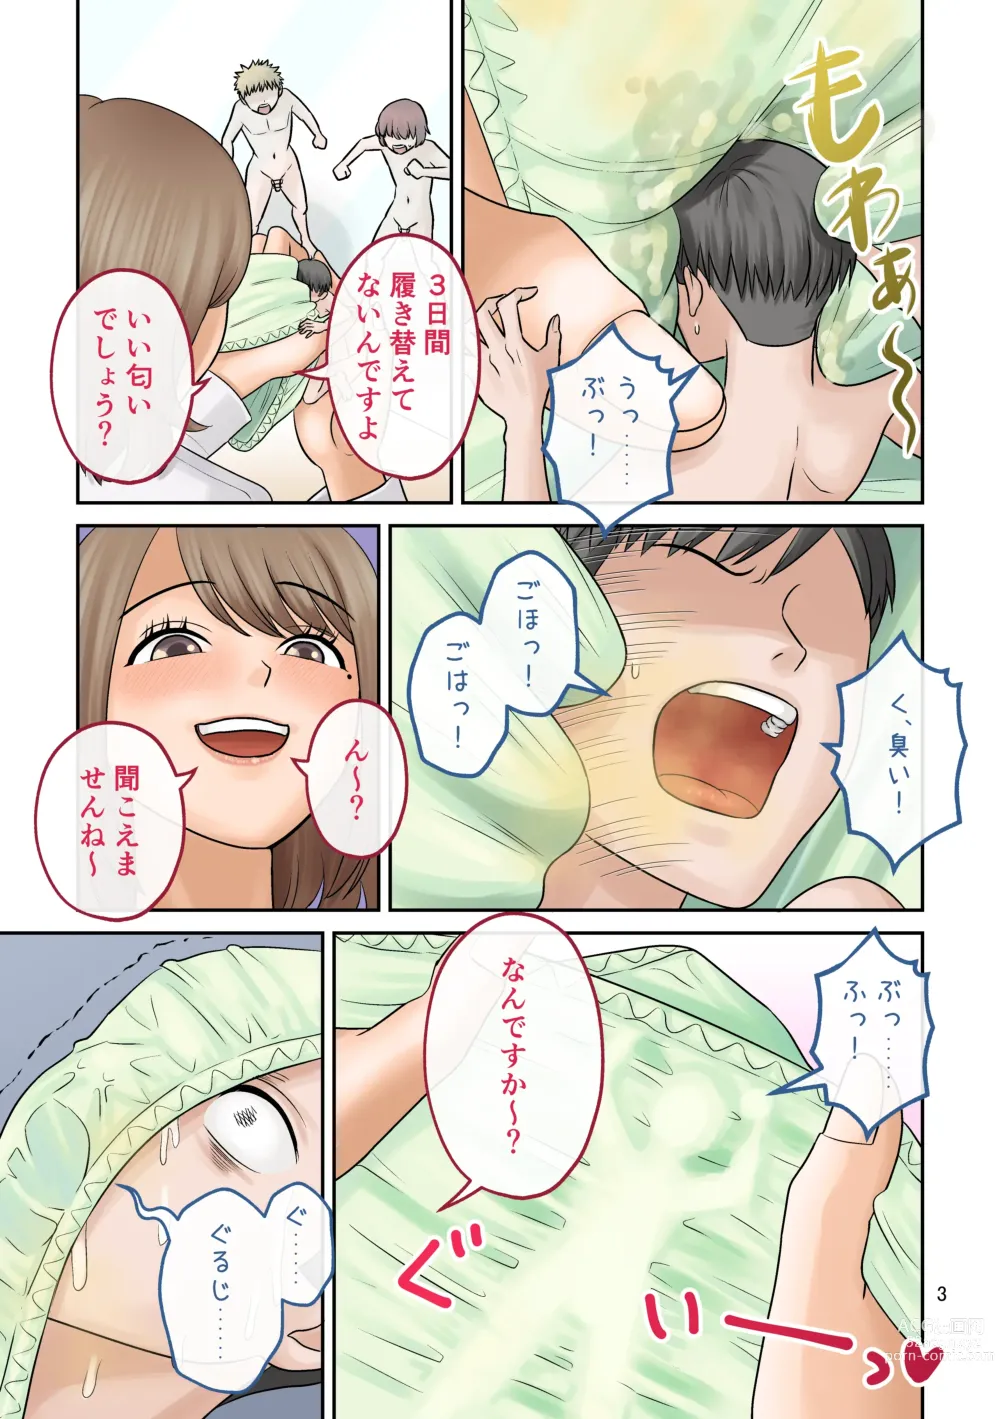 Page 3 of doujinshi Little shorts 【shrinker】